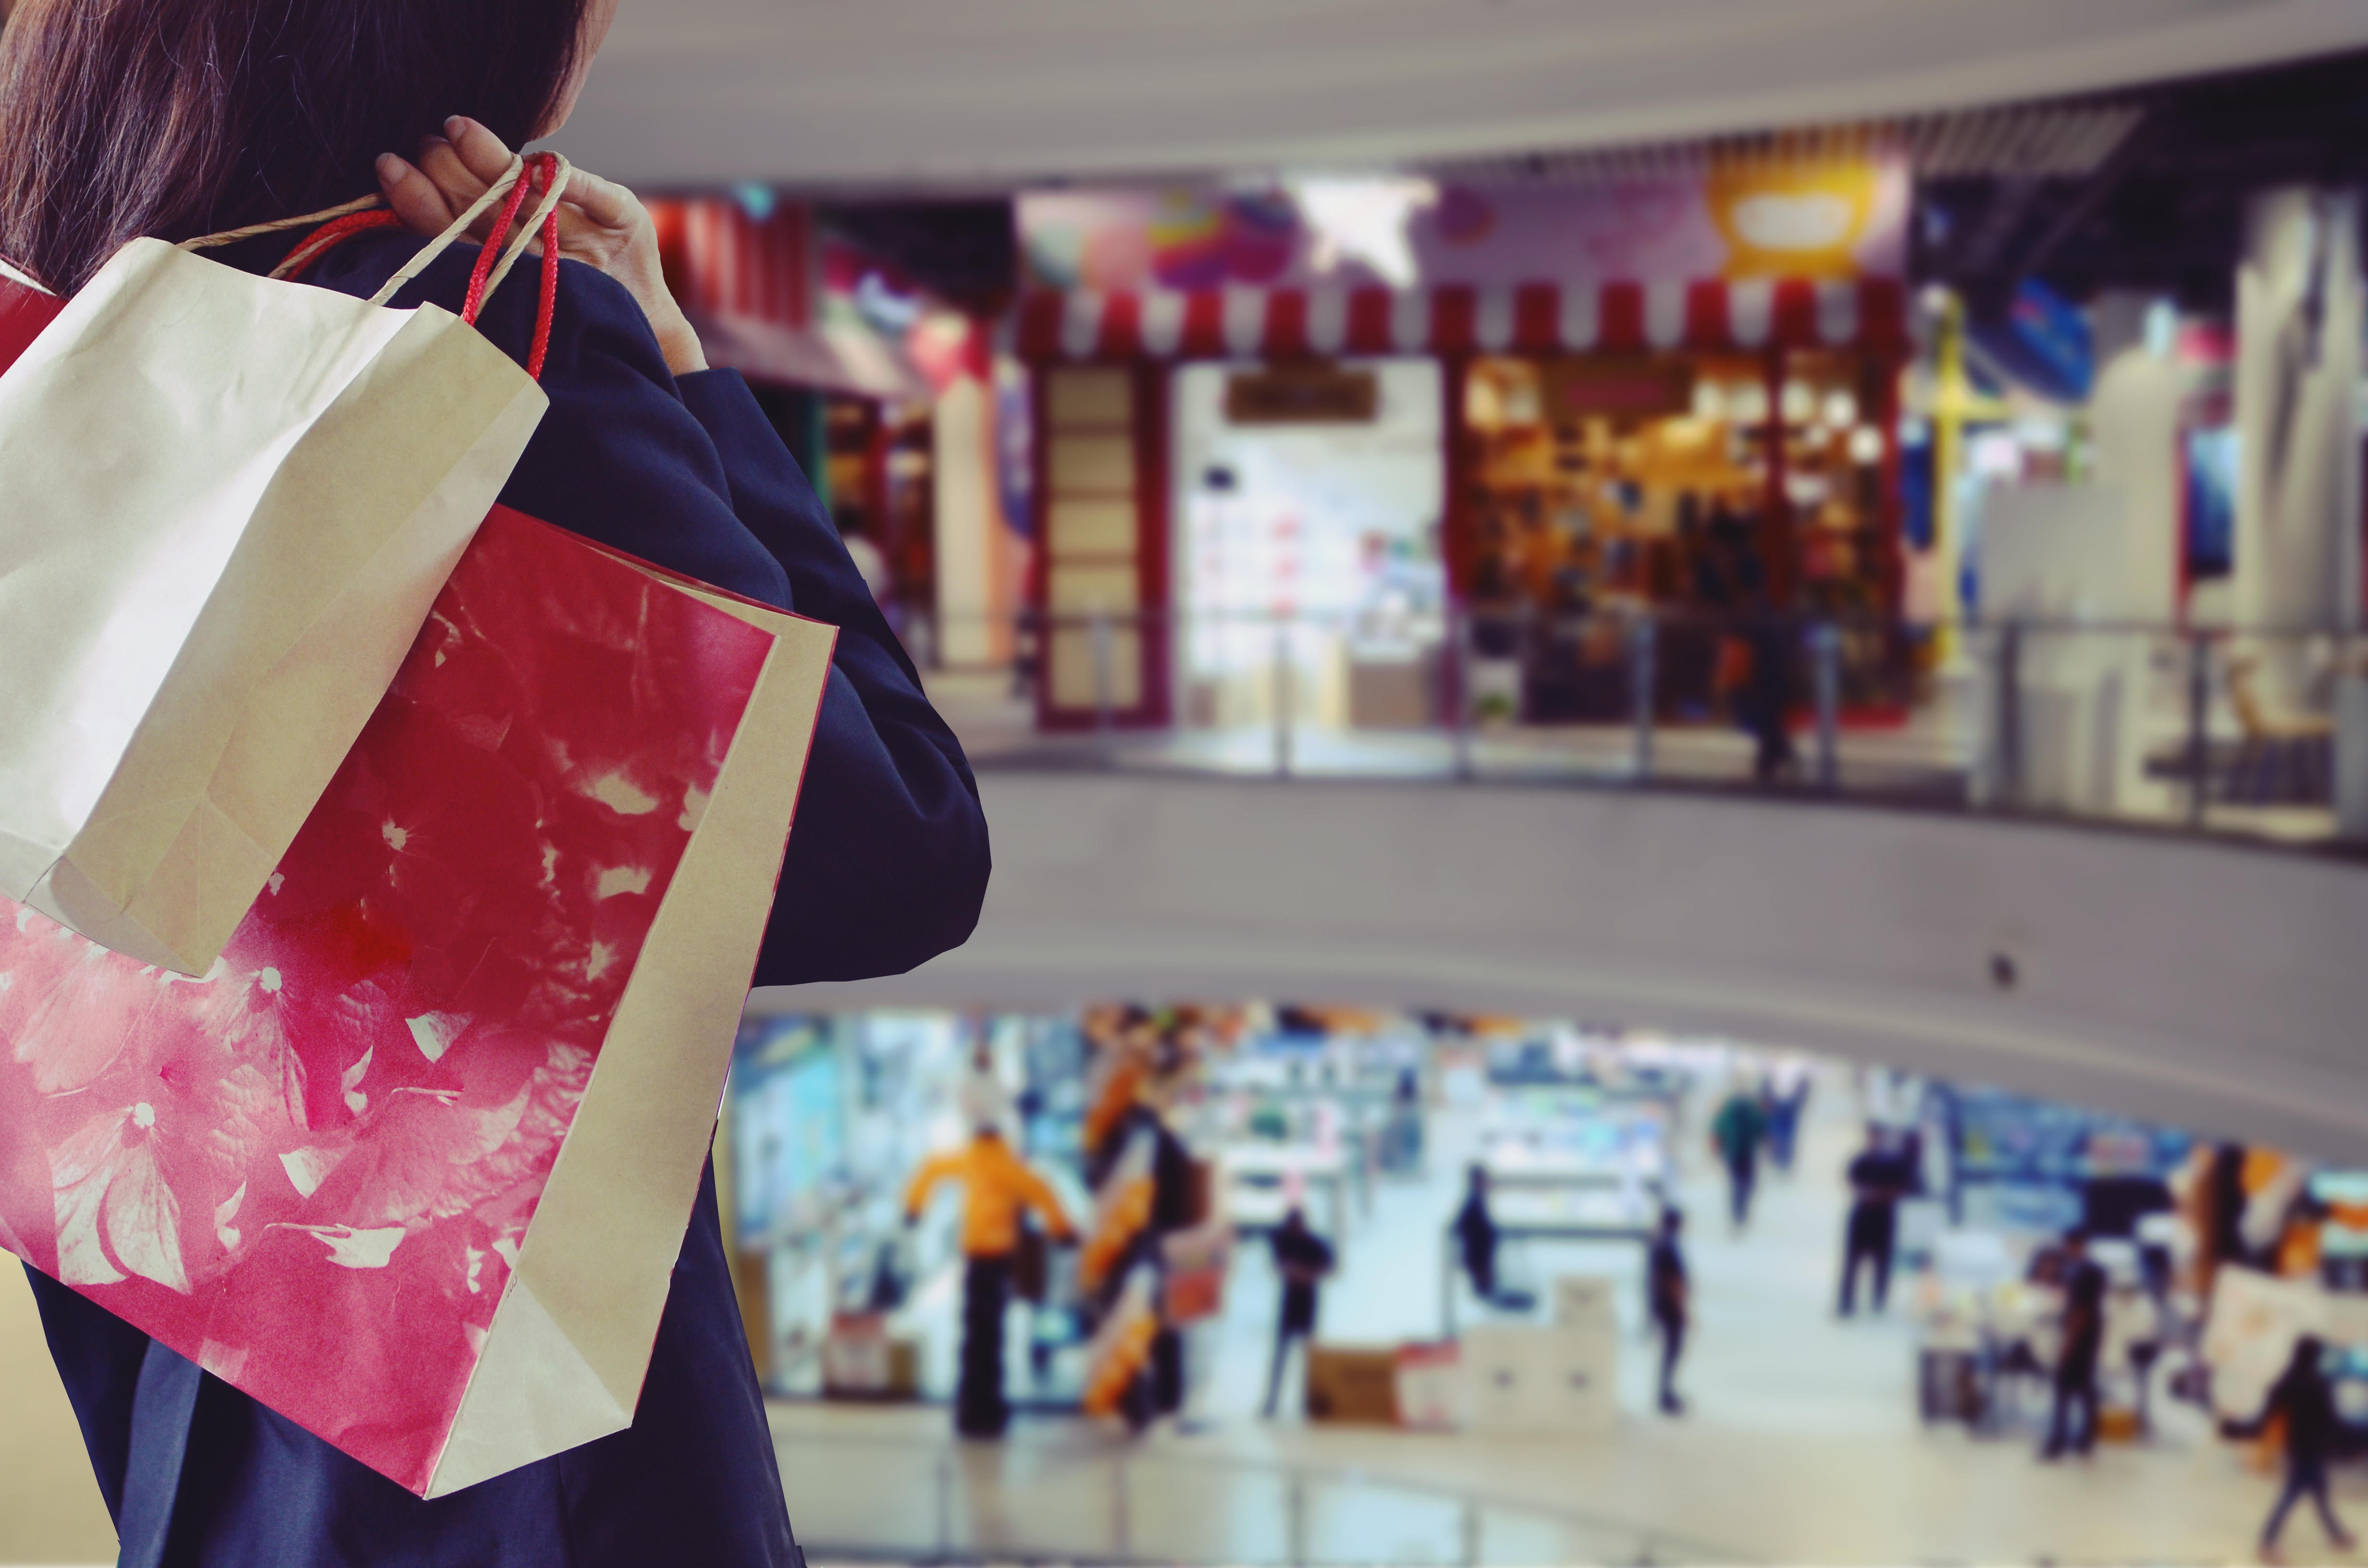 Una persona llevando bolsas de regalo | Foto: Shutterstock